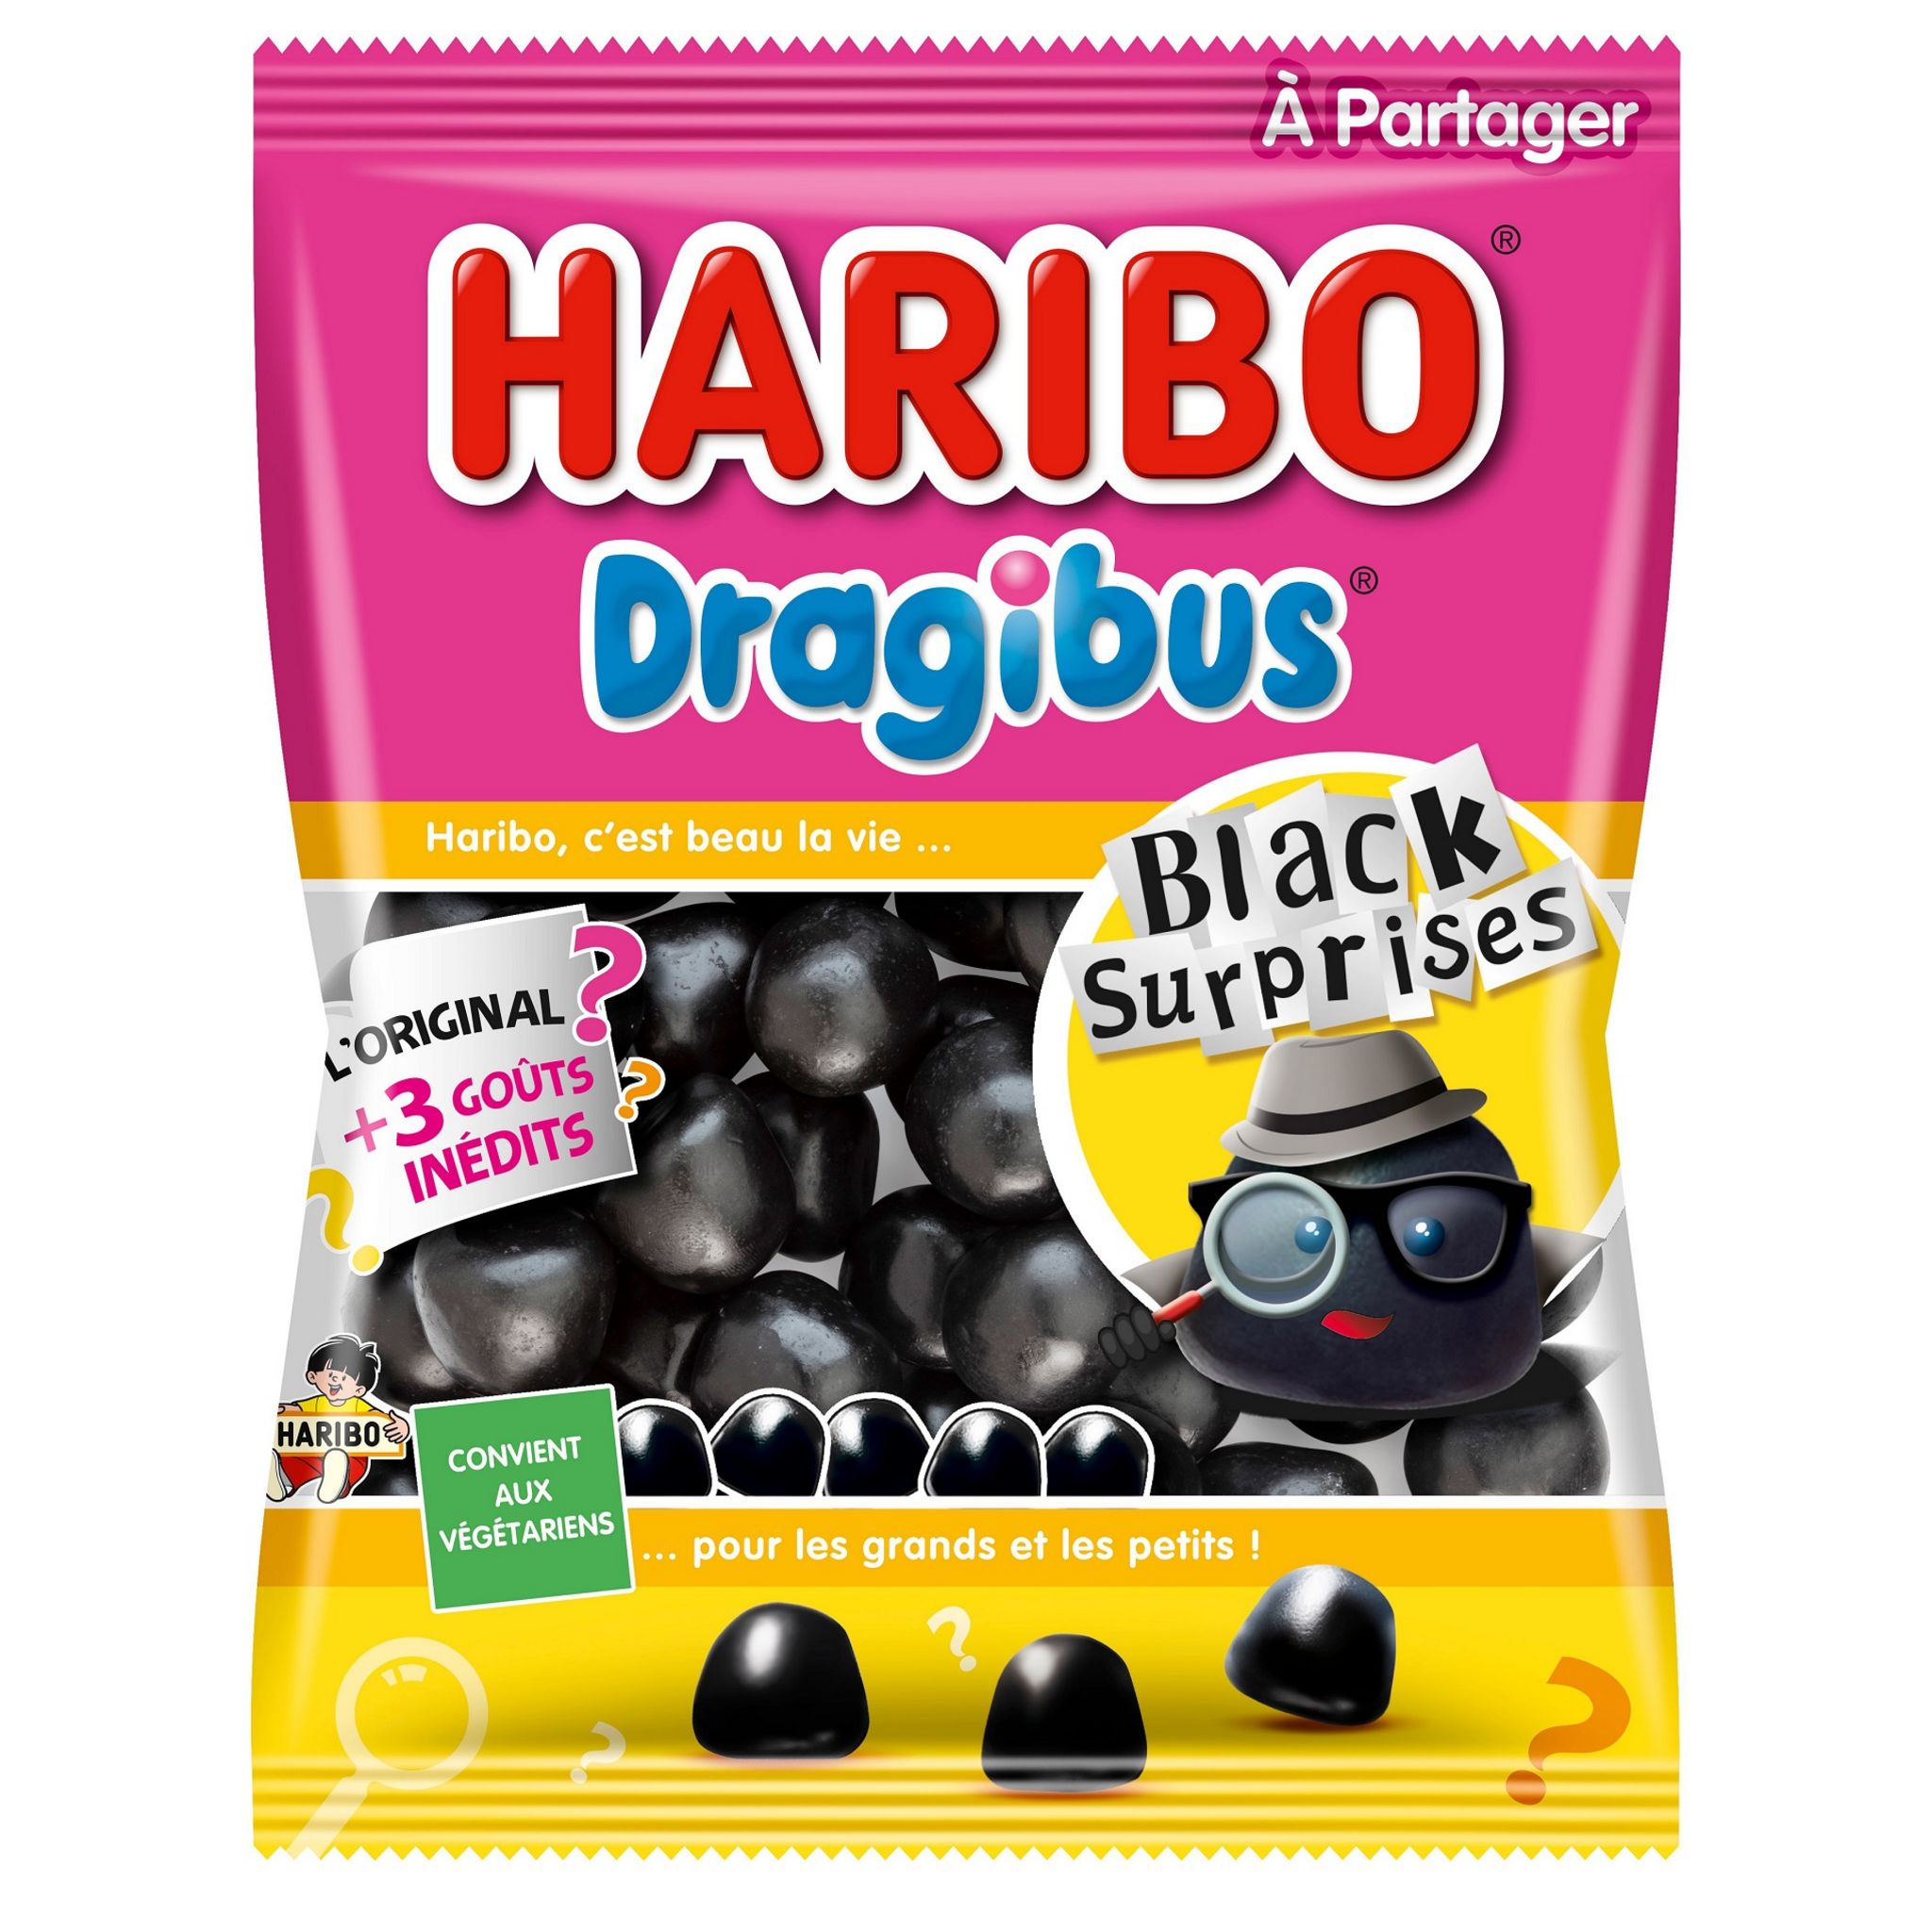 HARIBO Dragibus Black surprises 280g pas cher 